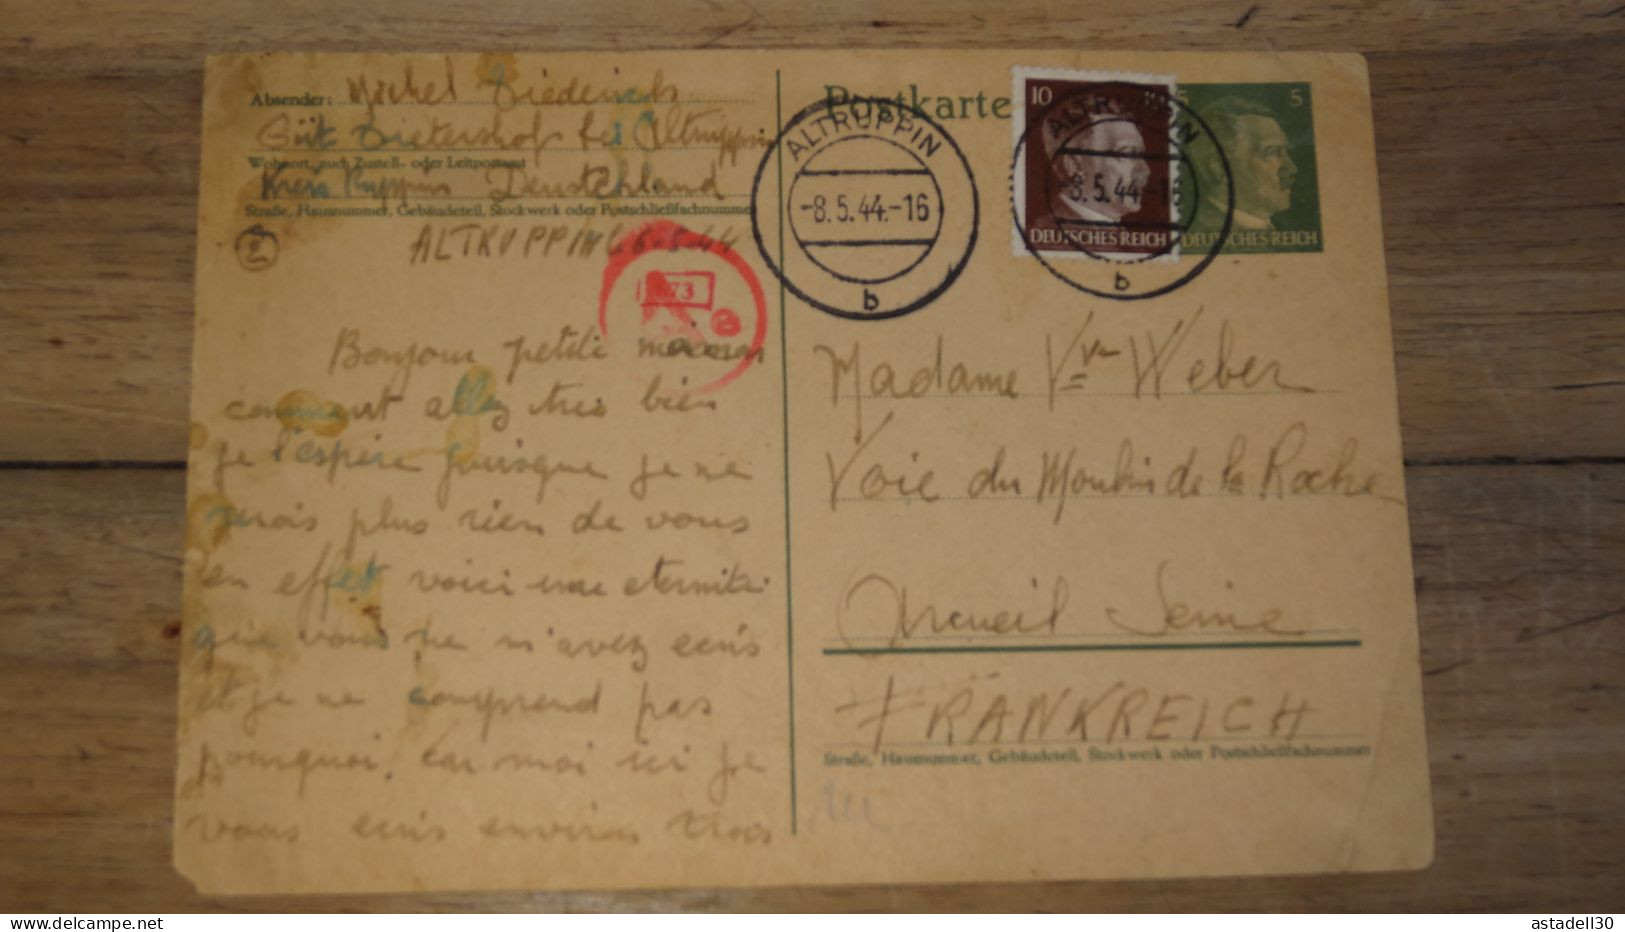 Entier Postal 5pf + Complement, DEUTSCHLAND, Altruppin 1944 ......... Boite1 ..... 240424-193 - Briefe U. Dokumente